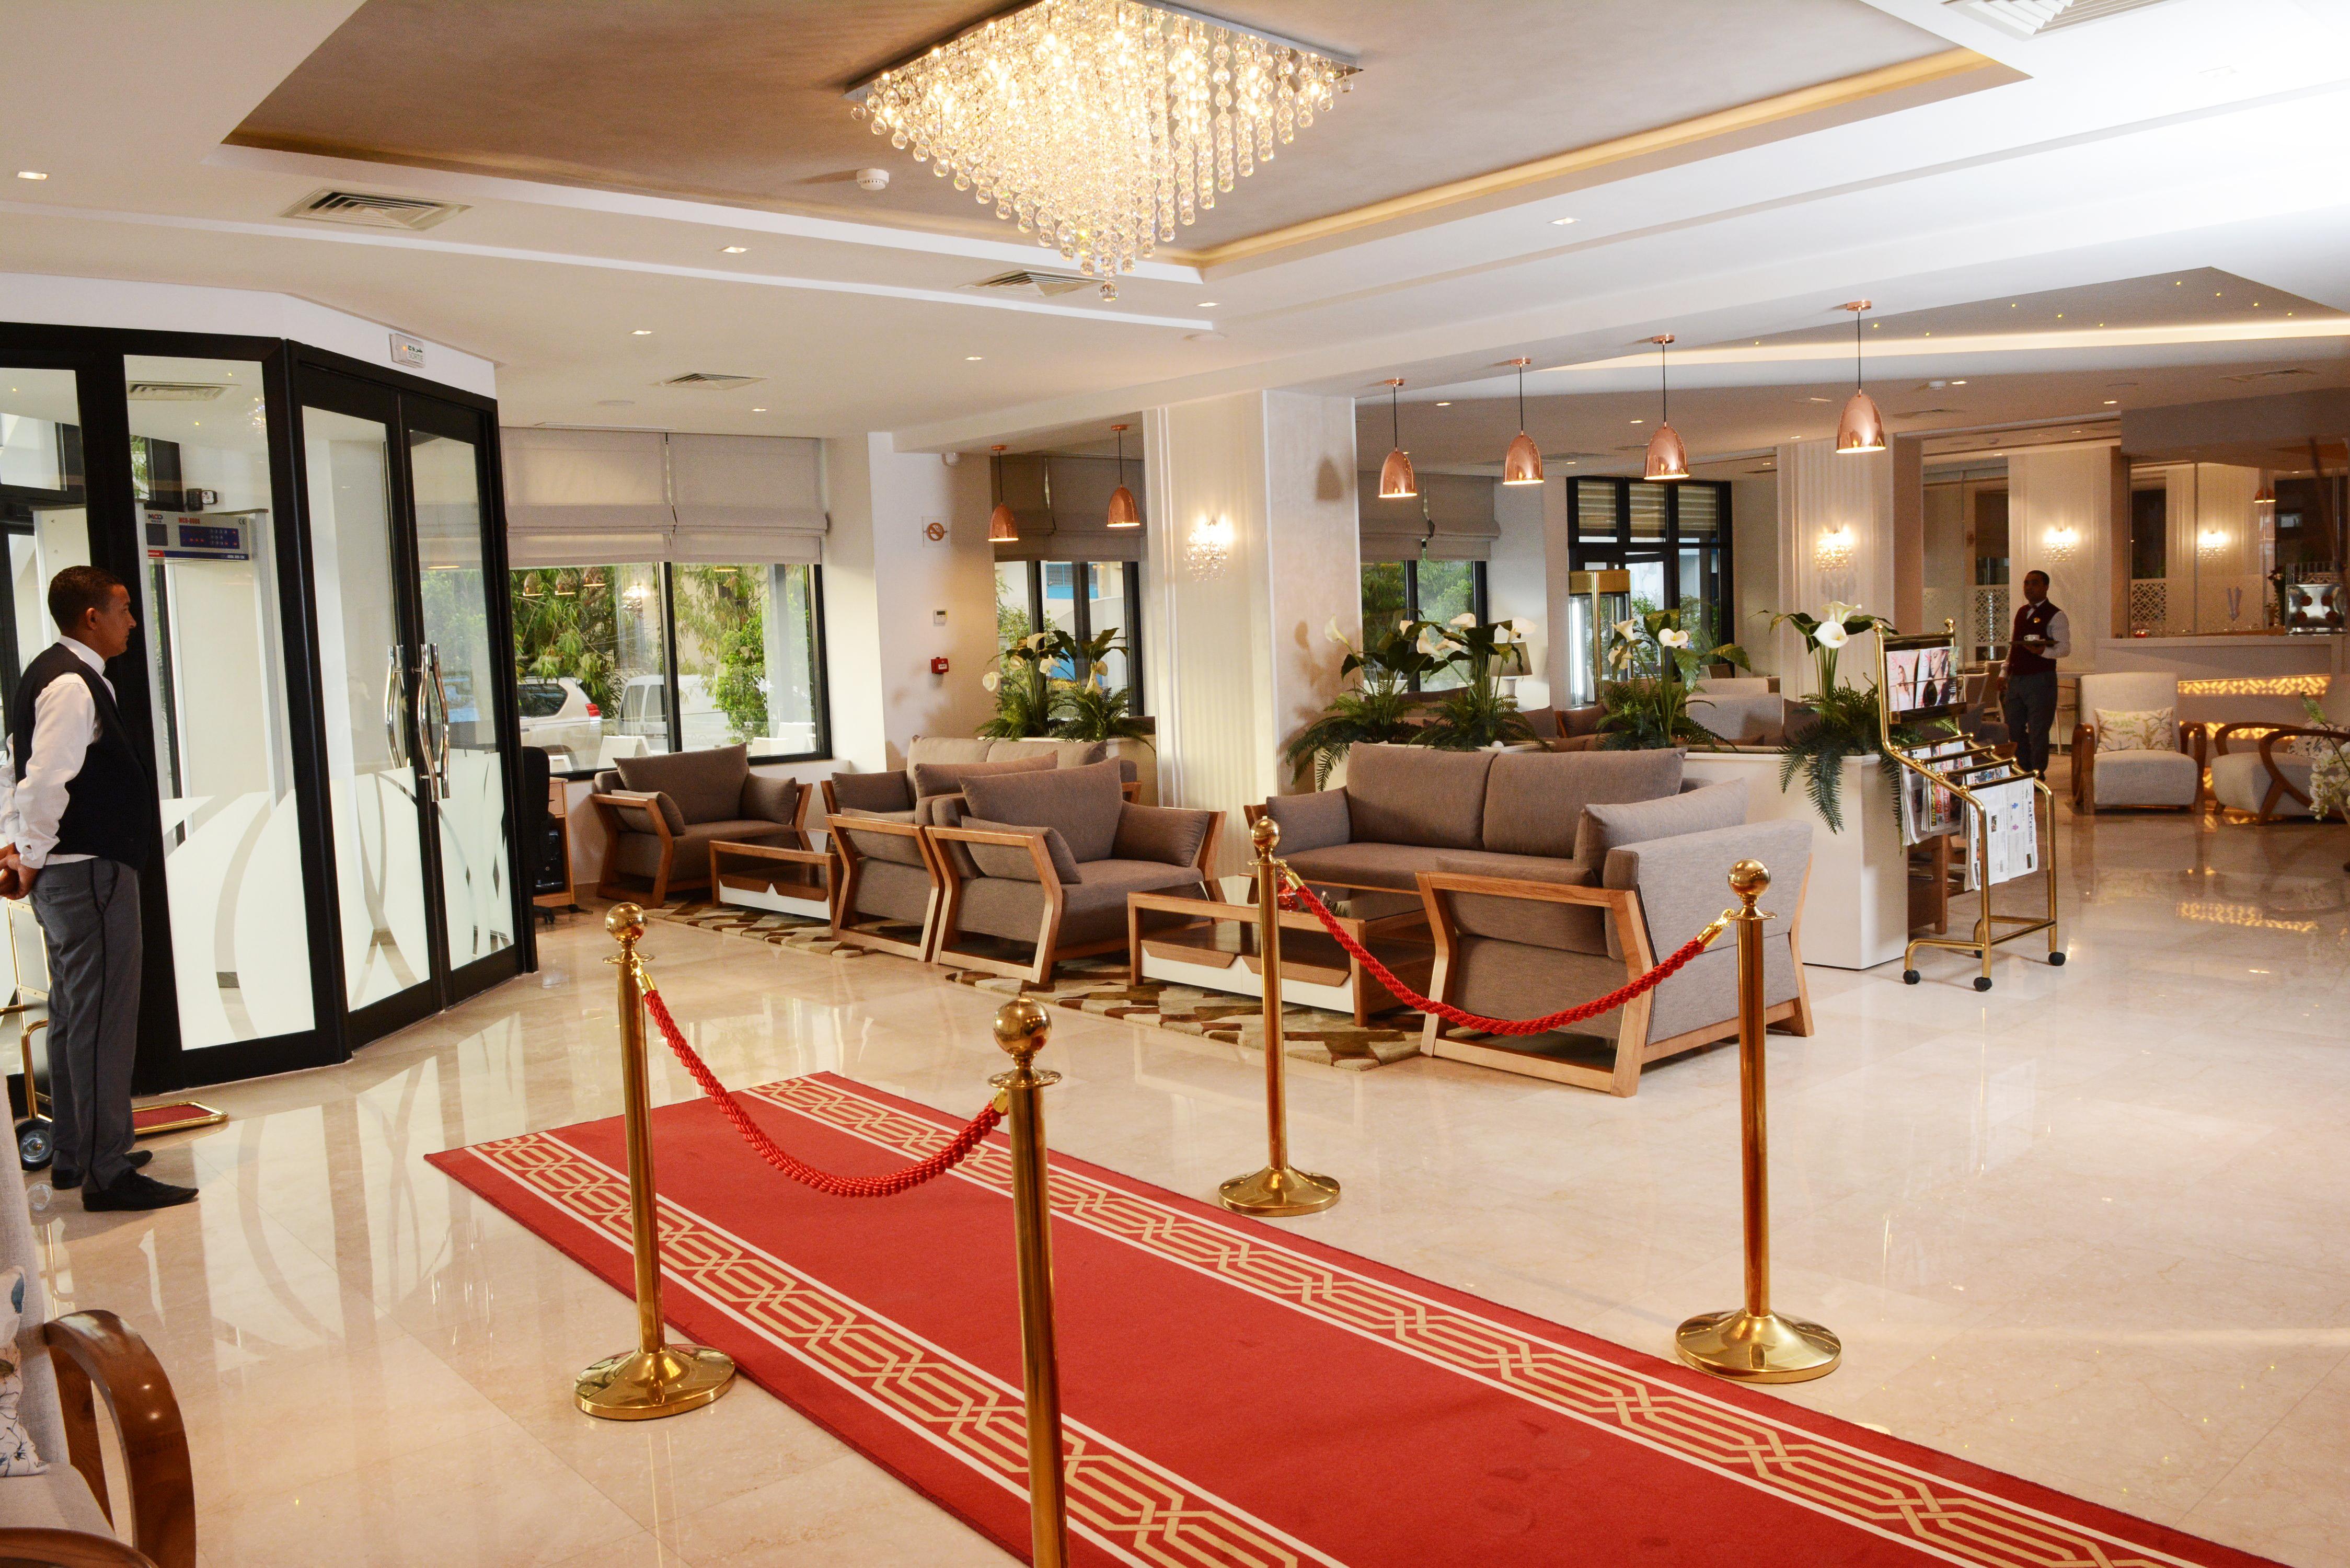 Marigold Hotel Тунис Экстерьер фото